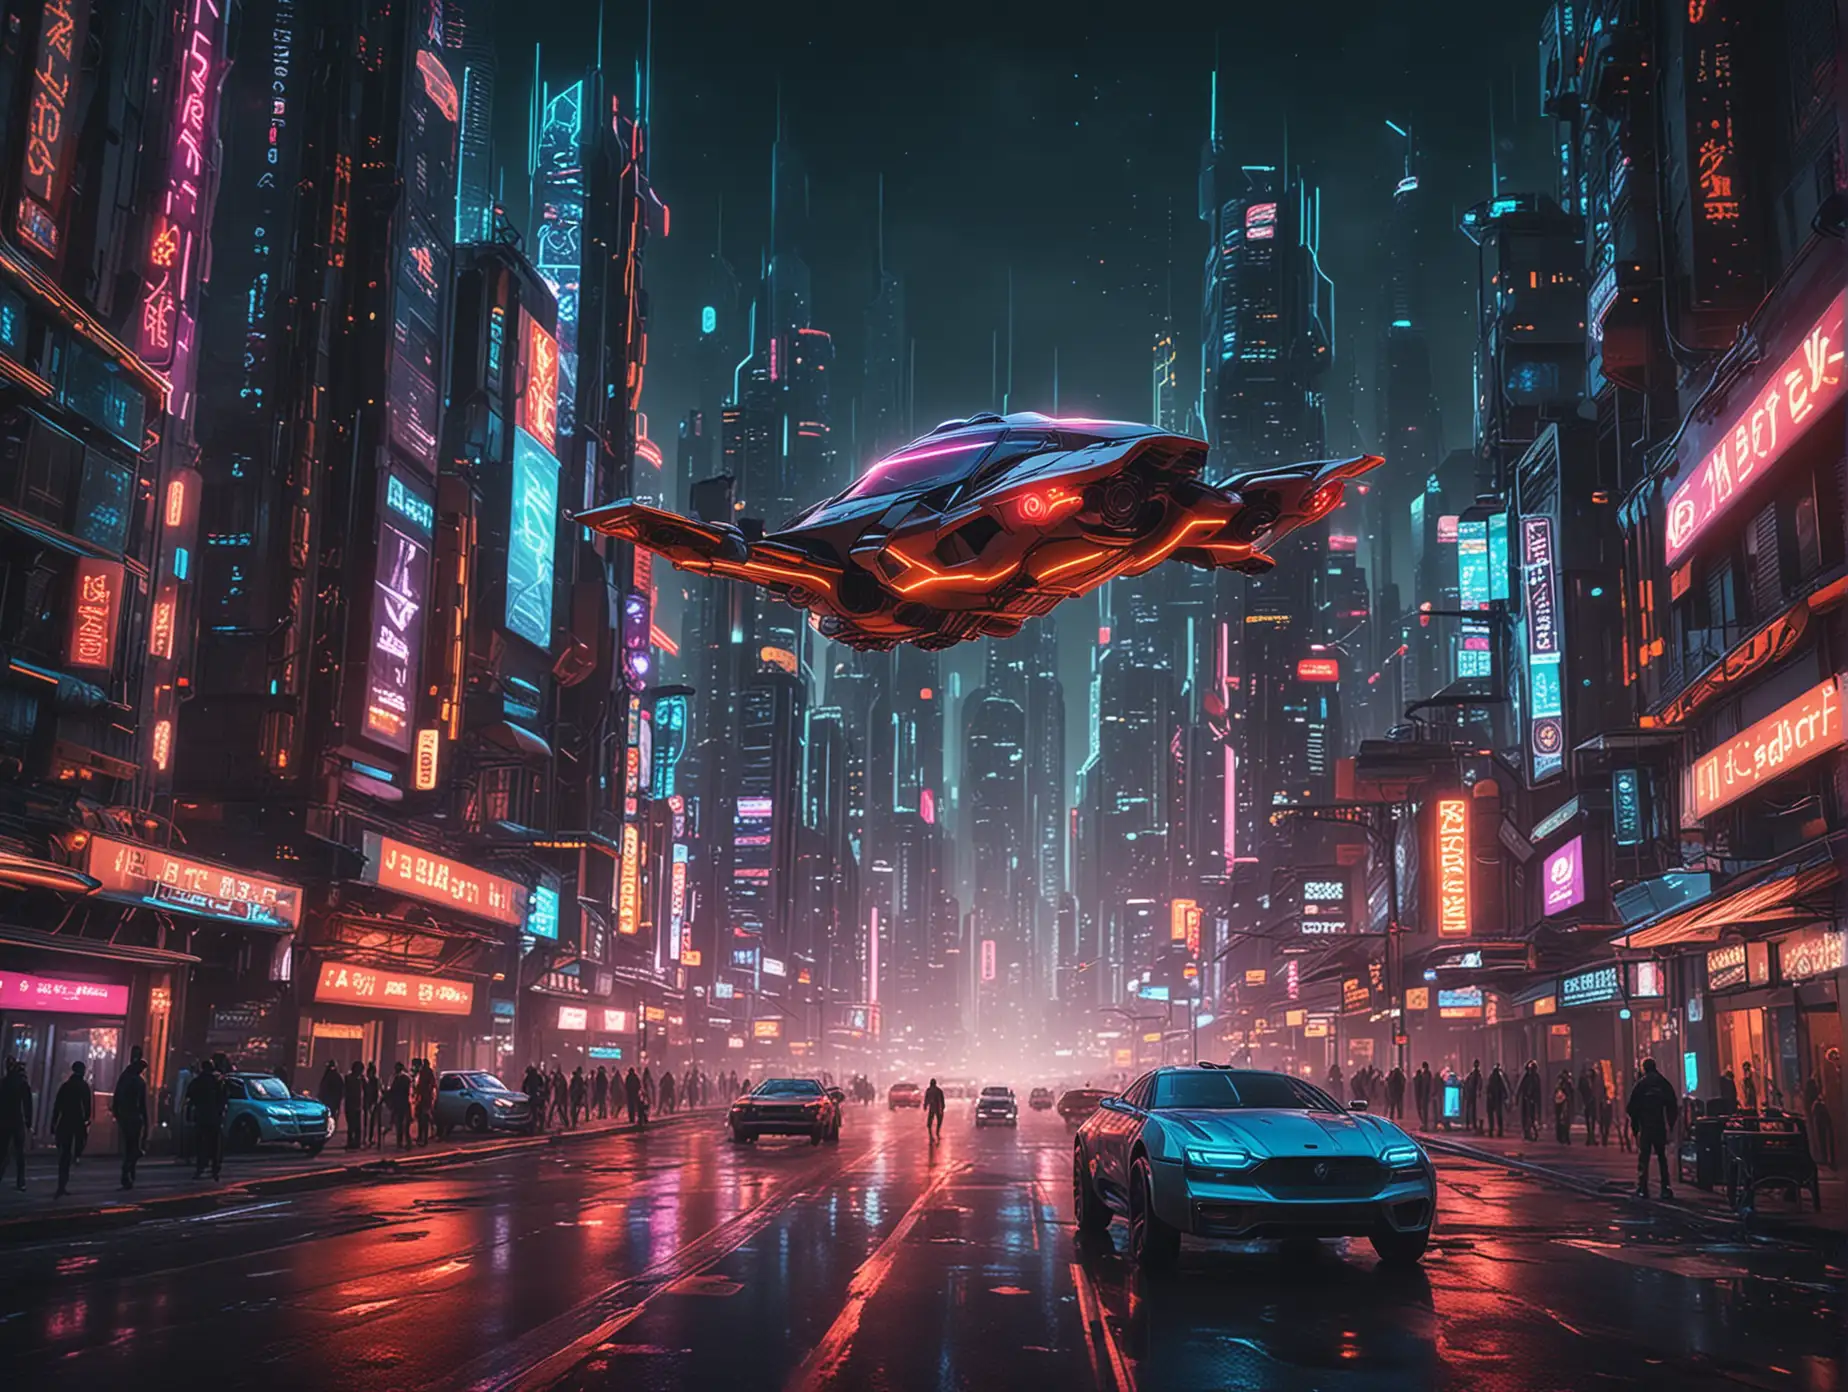 主题：科幻城市
风格：未来主义
场景：高科技都市、飞行汽车、摩天大楼
角色：机器人、未来人类
动作：行走、飞行
色彩：霓虹灯、冷色调
时间：夜晚
特效：光线追踪、动态模糊
音乐：电子音乐